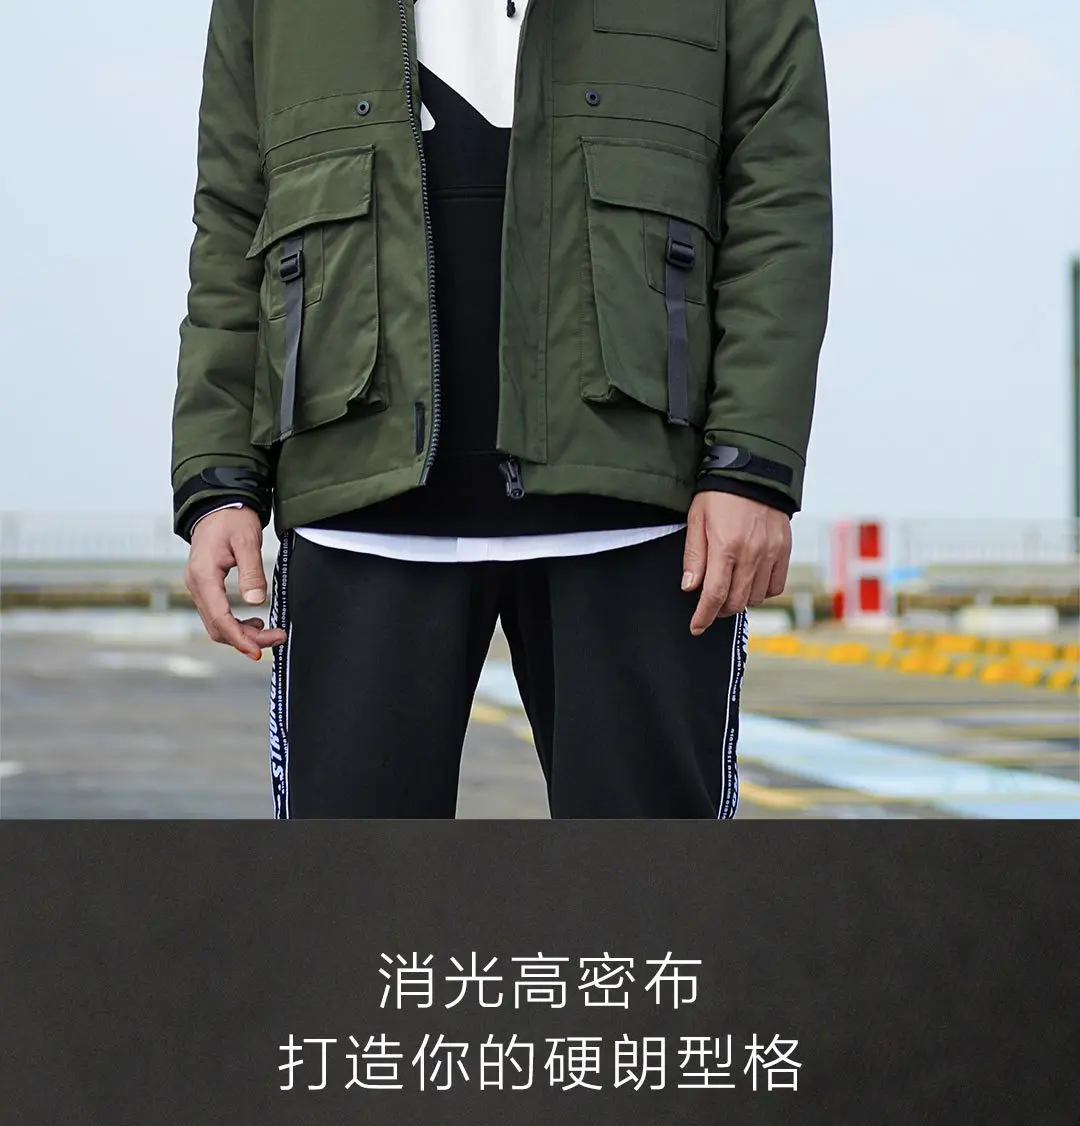 Xiaomi Mijia Youpin Uleemark Мужская оснастка хлопковая куртка оснастка стиль дизайн, 3M теплый бархат, удобная ткань памяти